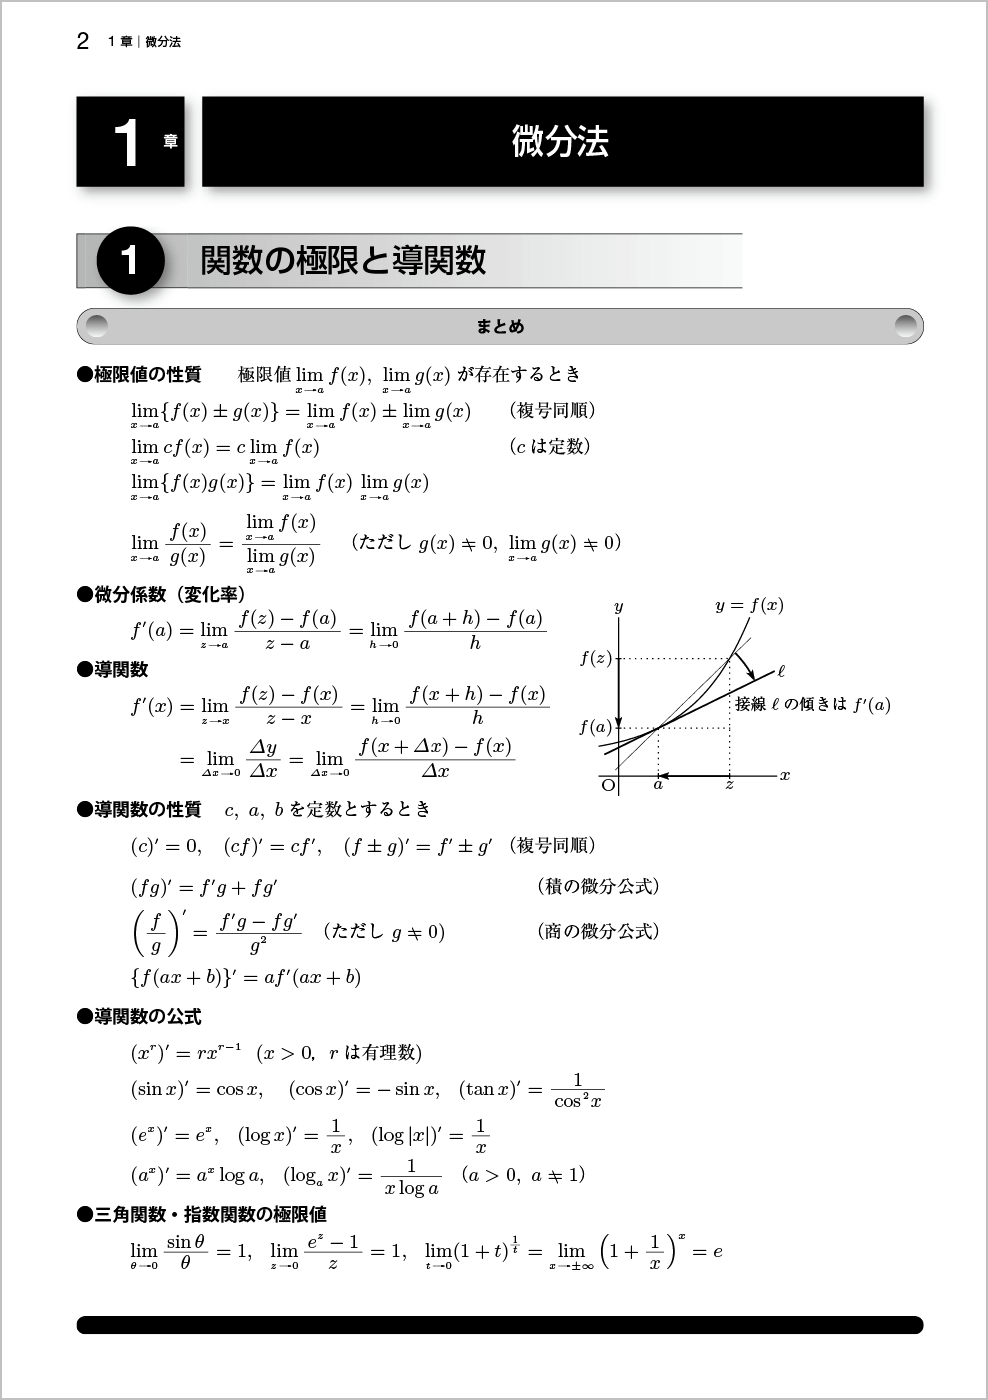 新微分積分Ⅰ問題集改訂版 p.2